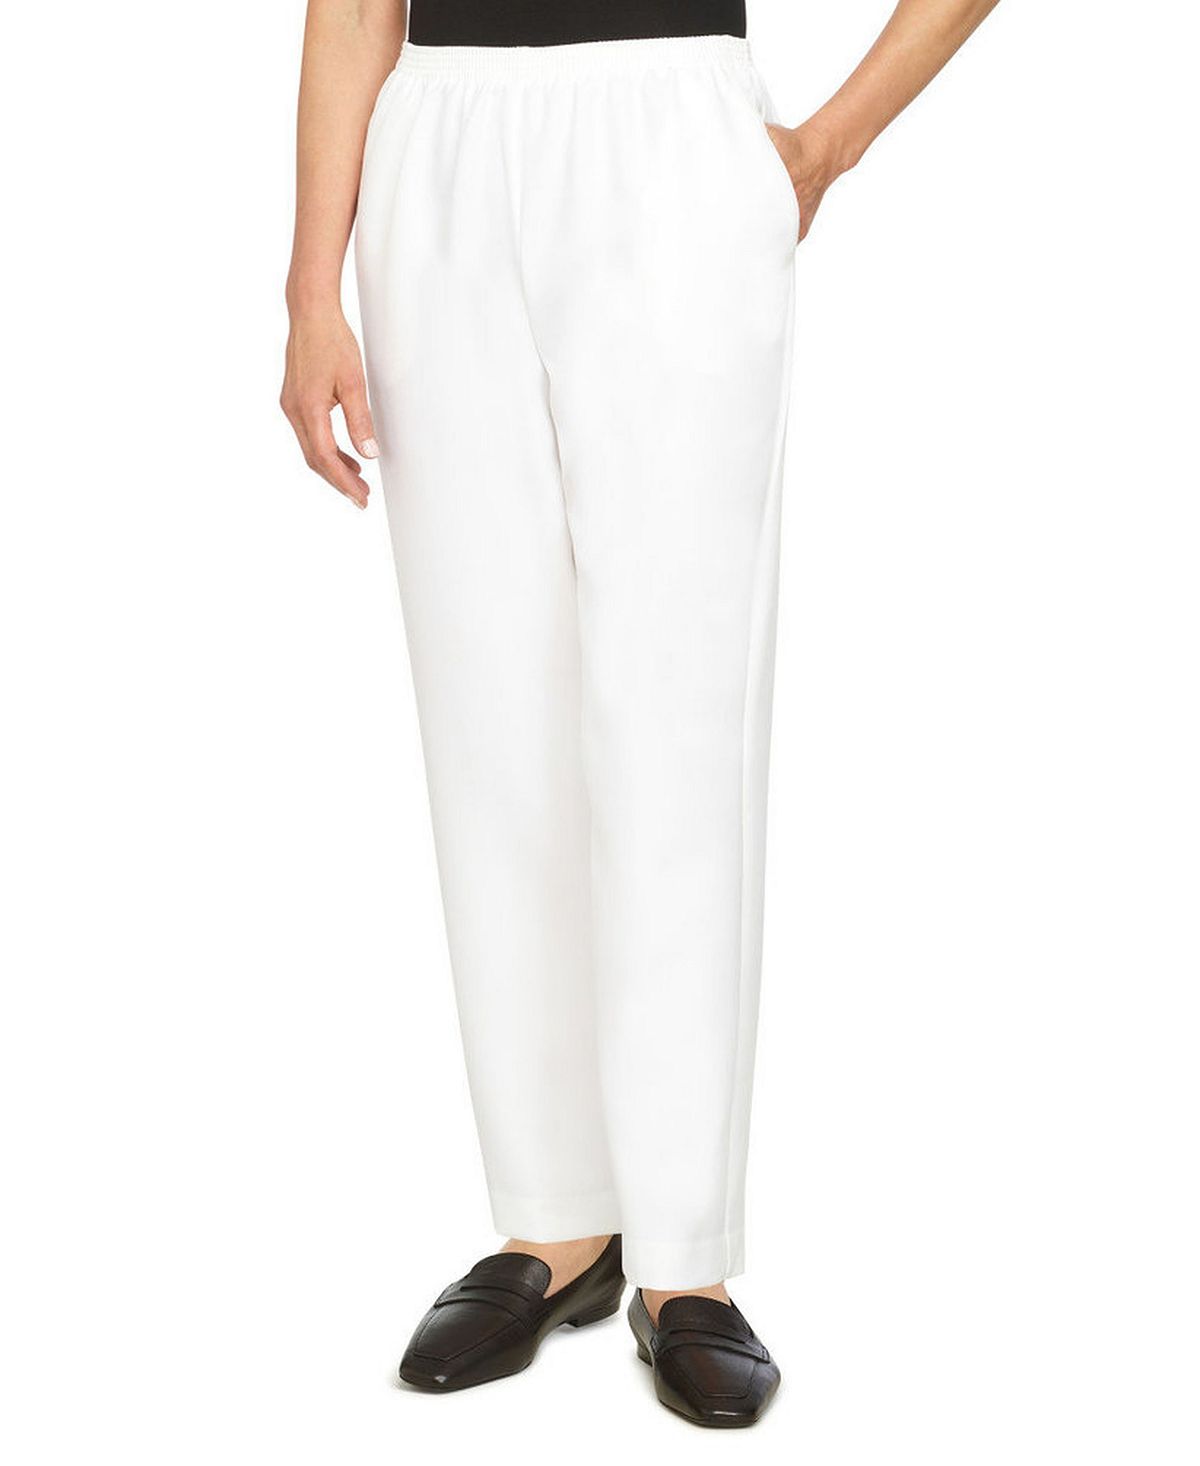 Плюс размер классические прямые брюки средней длины без застежек Alfred Dunner, белый комфортный пояс больших размеров средняя посадка прямые джинсовые брюки средней длины alfred dunner черный